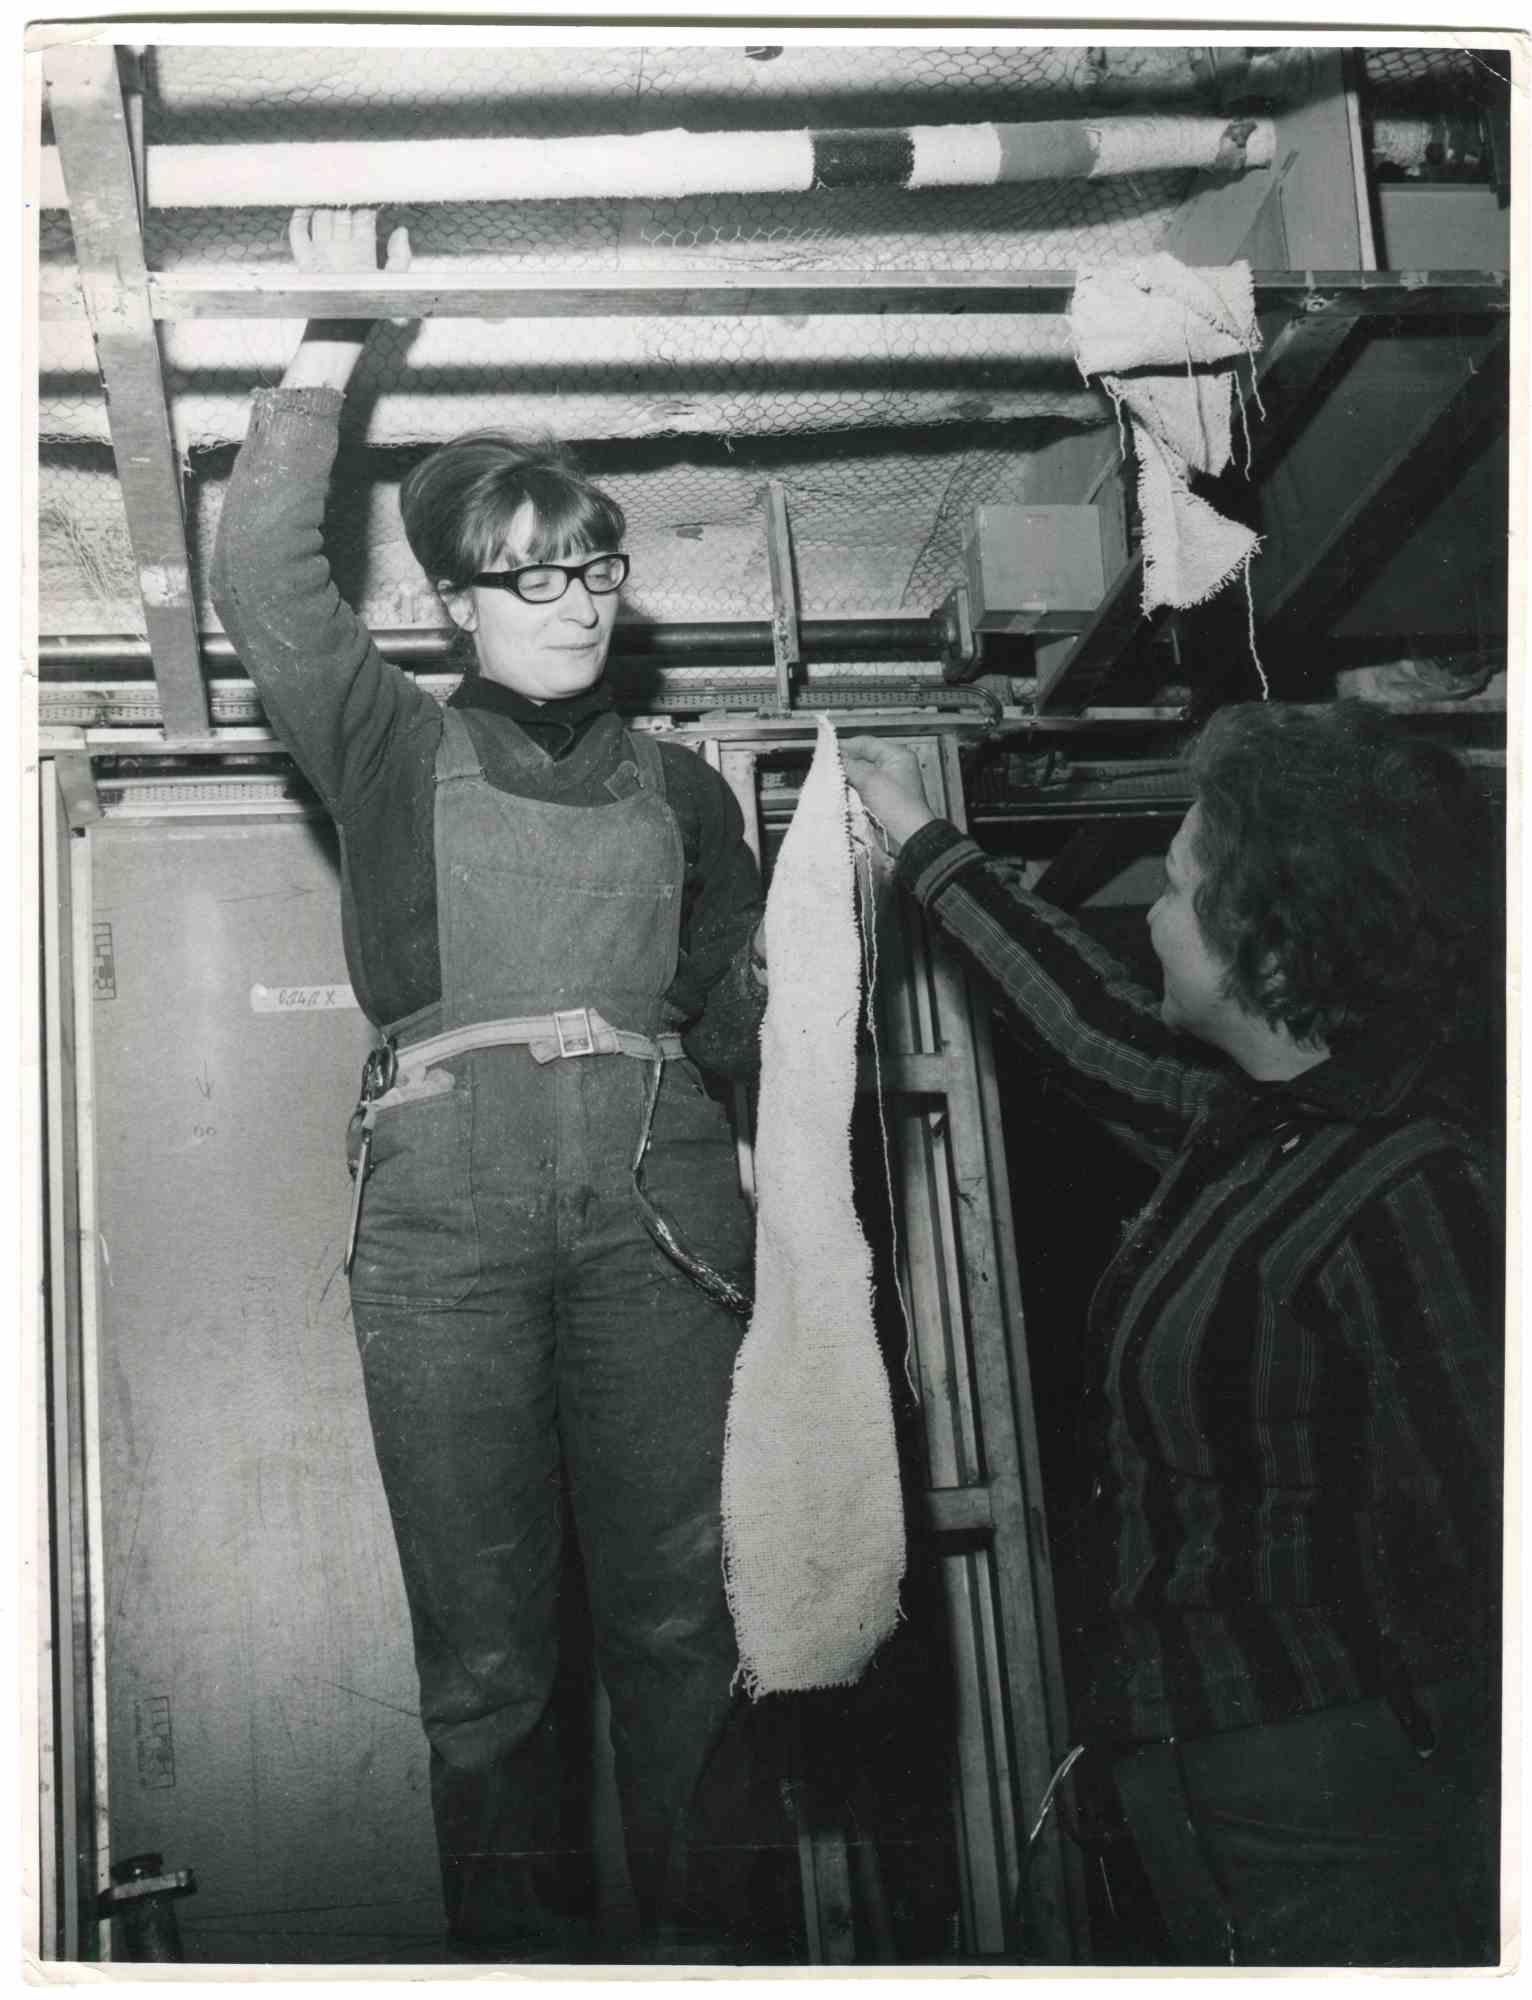 Unknown Portrait Photograph – Women at Work – Historische Fotografie über die Rechte von Frauen – 1965